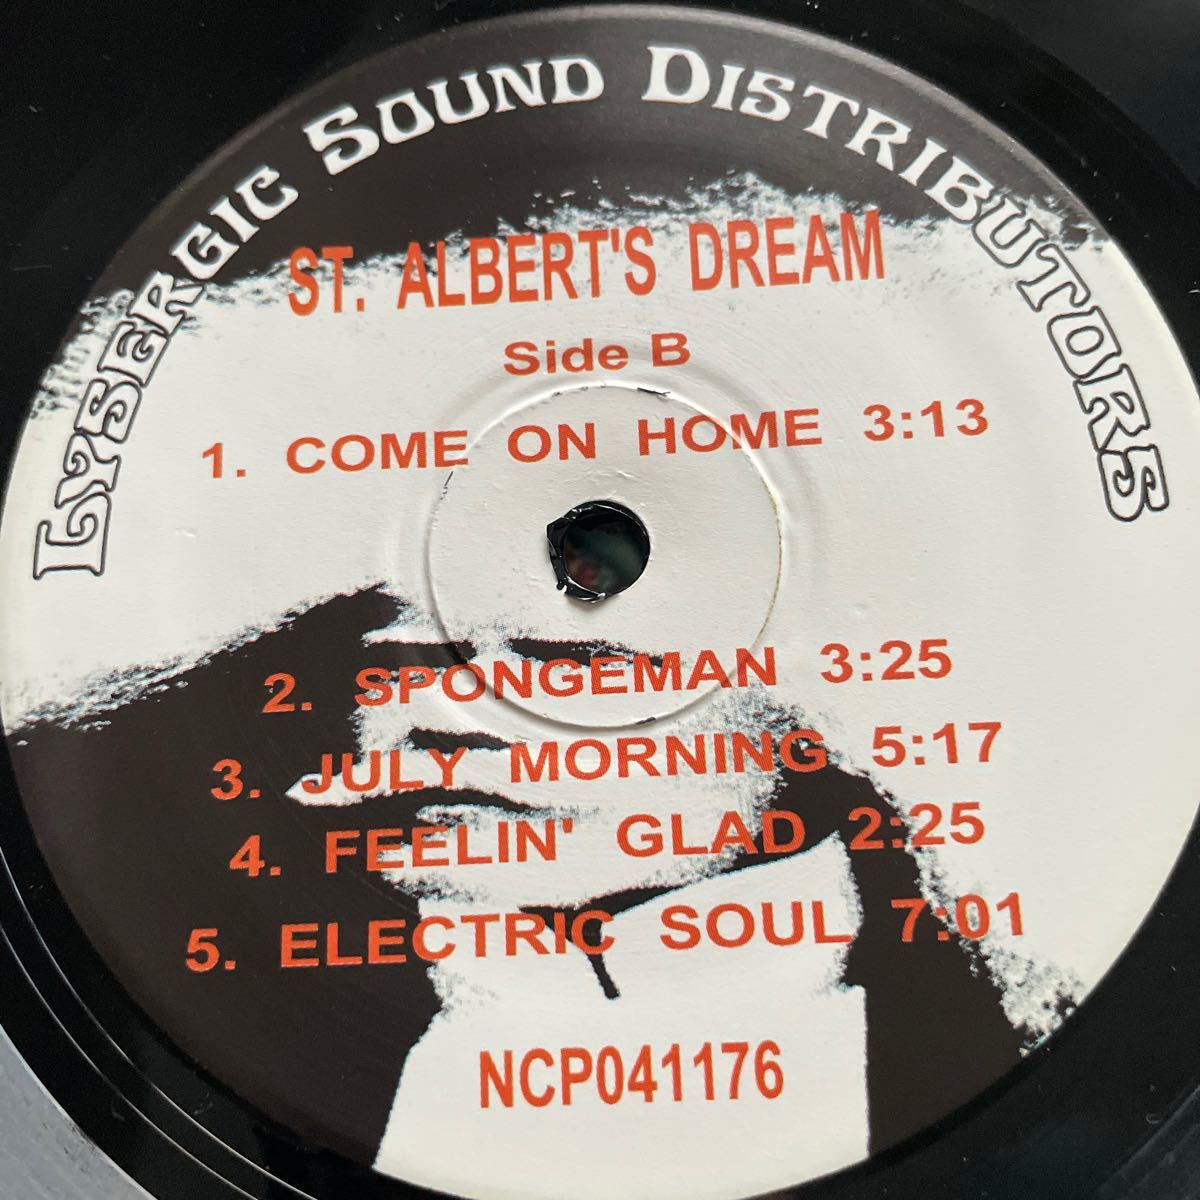 ST. ALBERT’S DREAM LP 1968-72 サイケコンピレーション psych acid stoner rock psychedelic_画像4